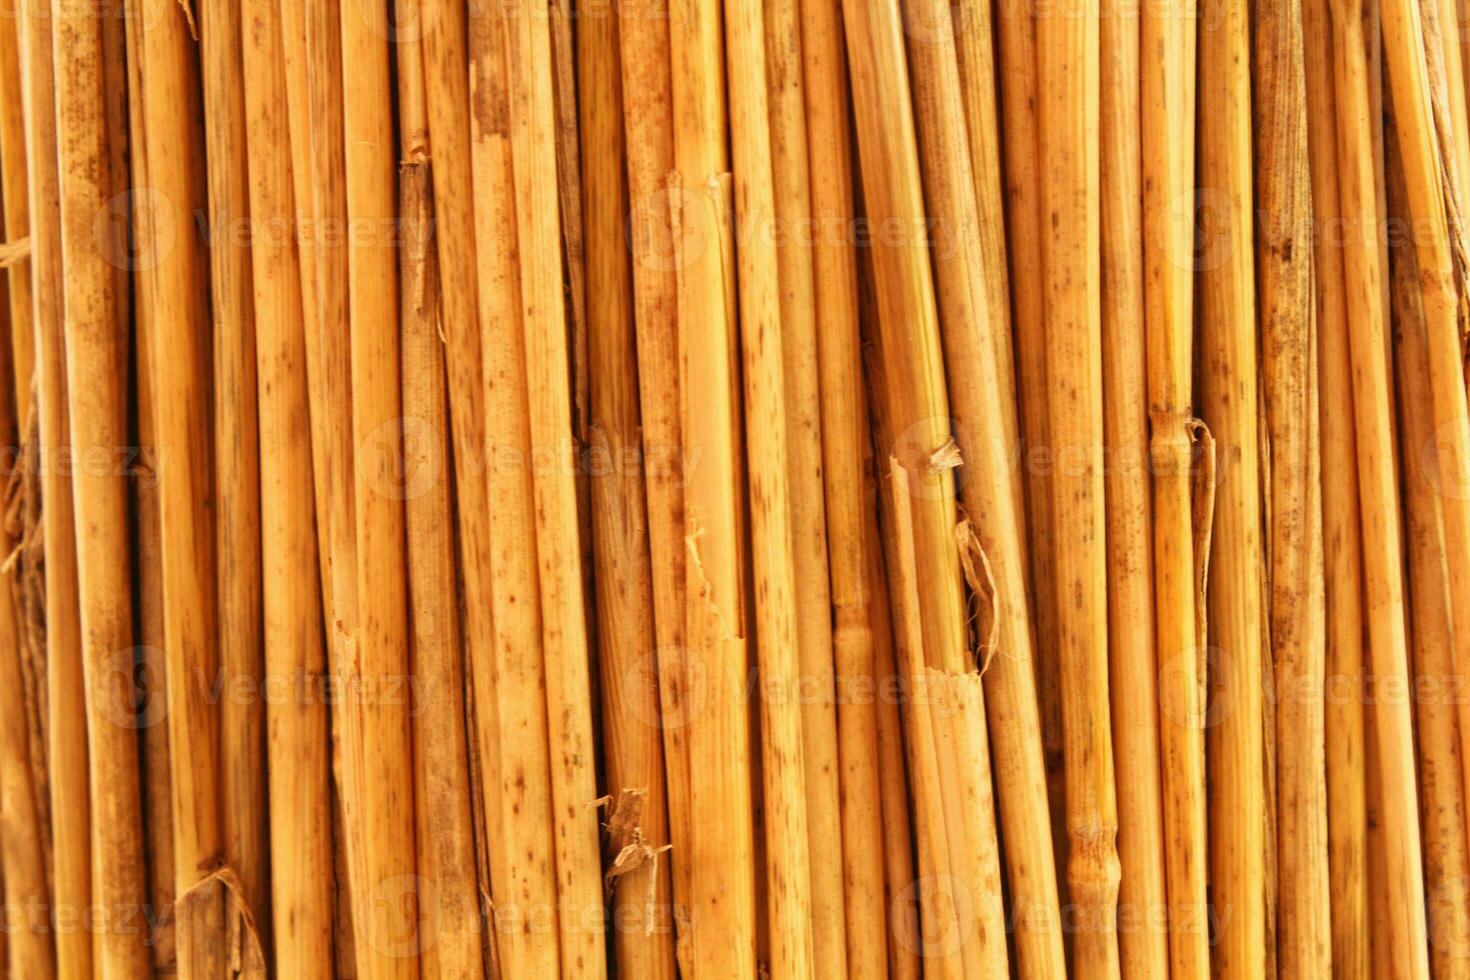 tarwe stengels geel droog rietje structuur achtergrond. rijp besnoeiing stam planten. droog riet stokken. twijgen hout takken. bamboe plank hek eco textuur. droog rivier- stokken. gevouwen riet. natuurlijk materiaal decor foto